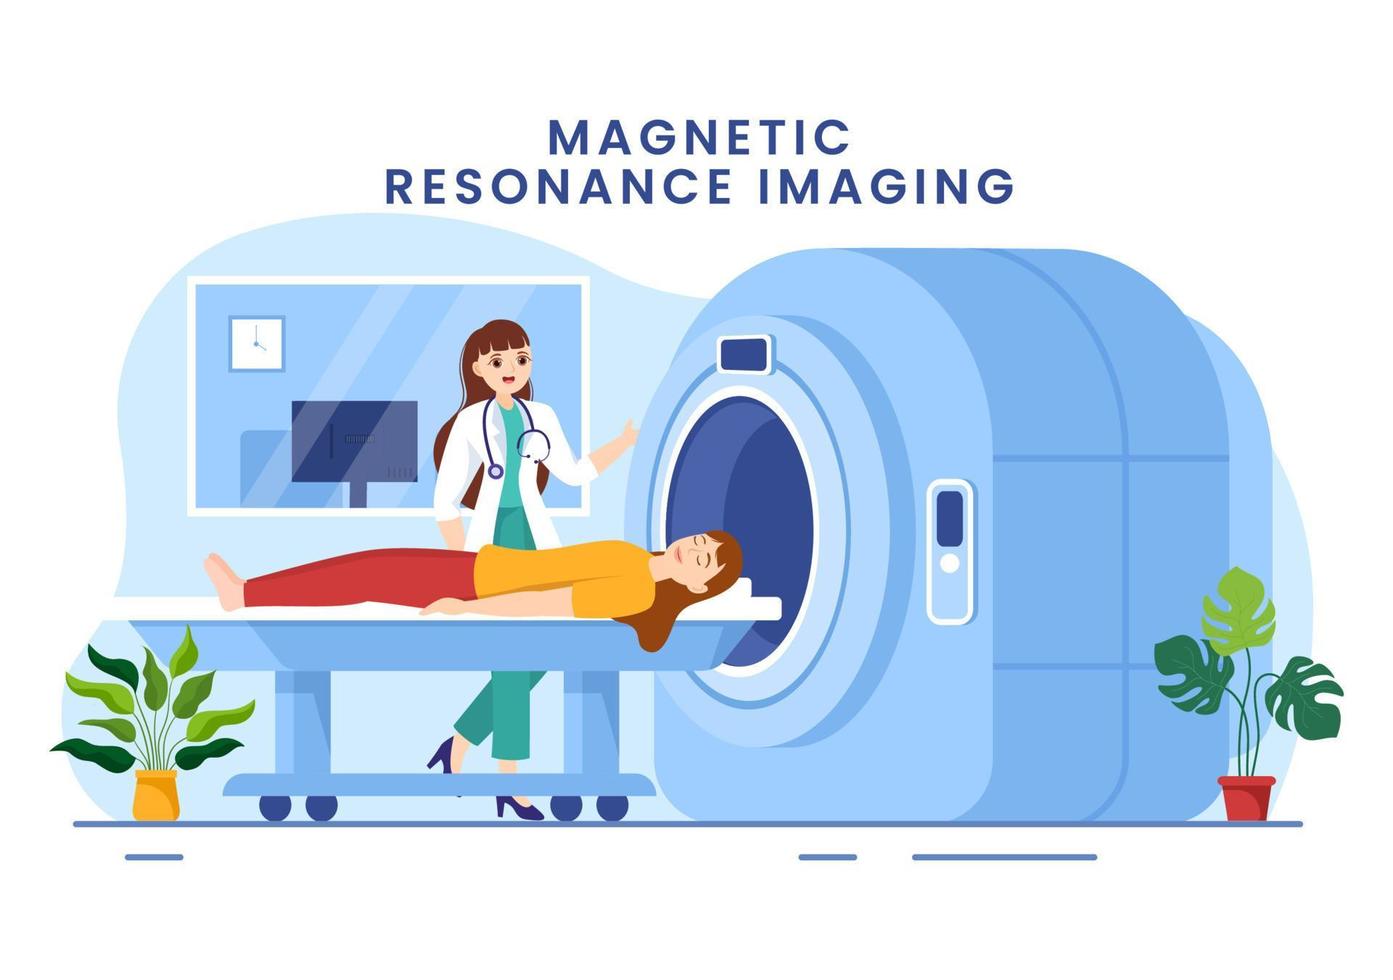 mri o magnetico risonanza l'imaging illustrazione con medico e paziente su medico visita medica e ct scansione nel piatto cartone animato mano disegnato modelli vettore